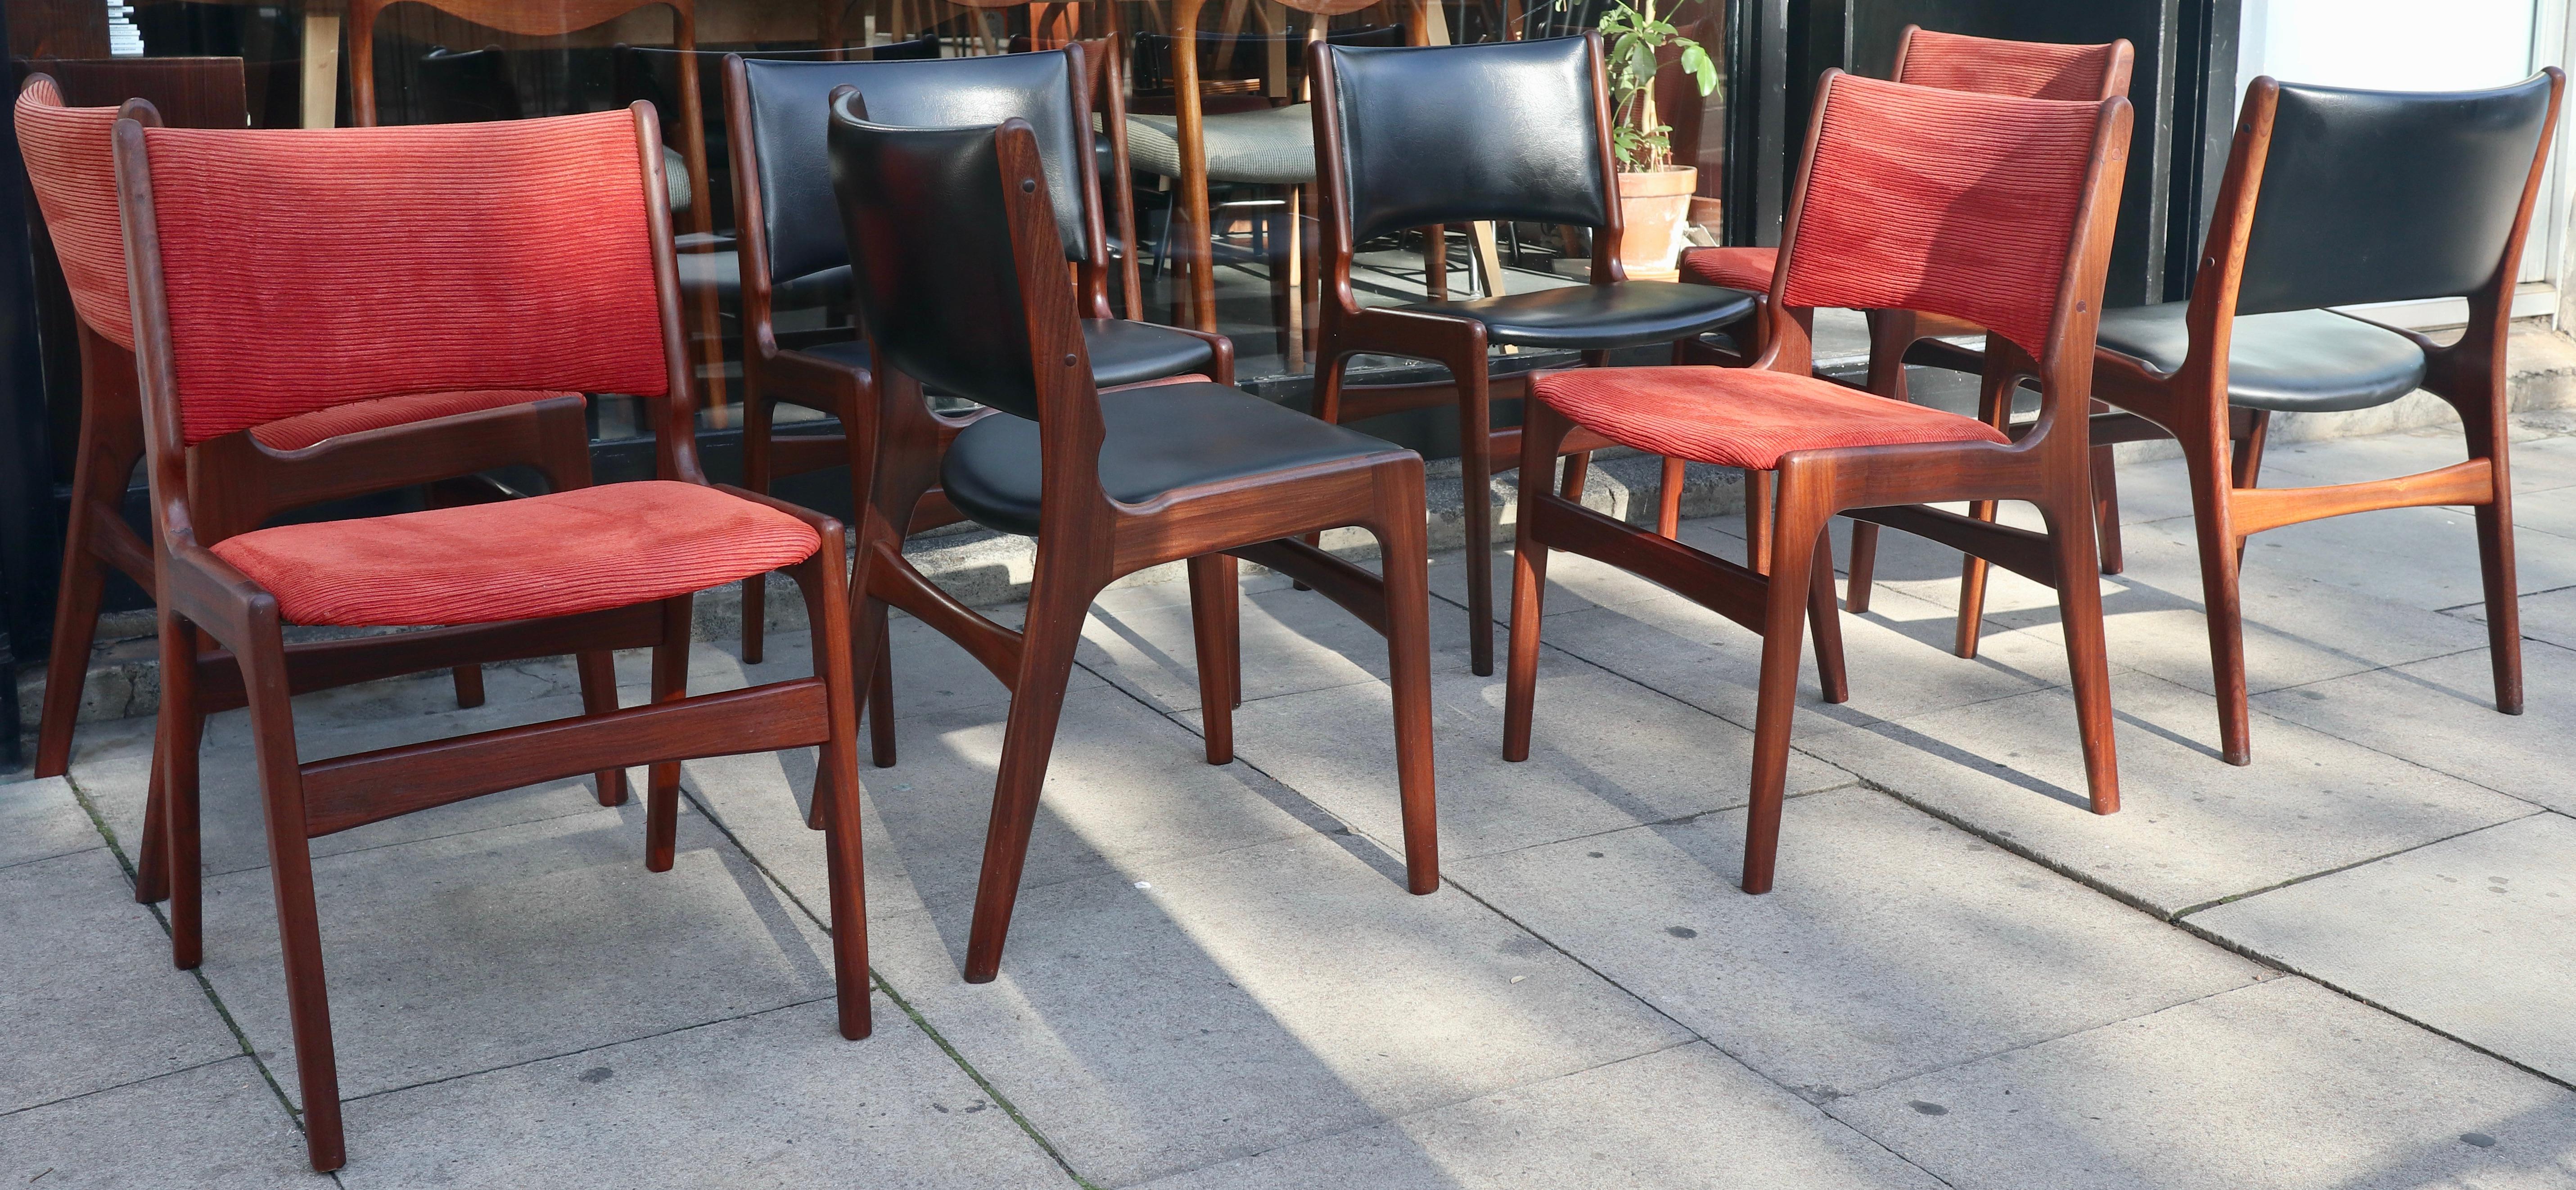 Un ensemble rare et élégant de huit chaises de salle à manger danoises en teck massif, modèle 89, dont quatre sont recouvertes d'un revêtement textile en velours rose/rouge et quatre d'un revêtement en vinyle noir.  Conçues par Erik Buch pour povl